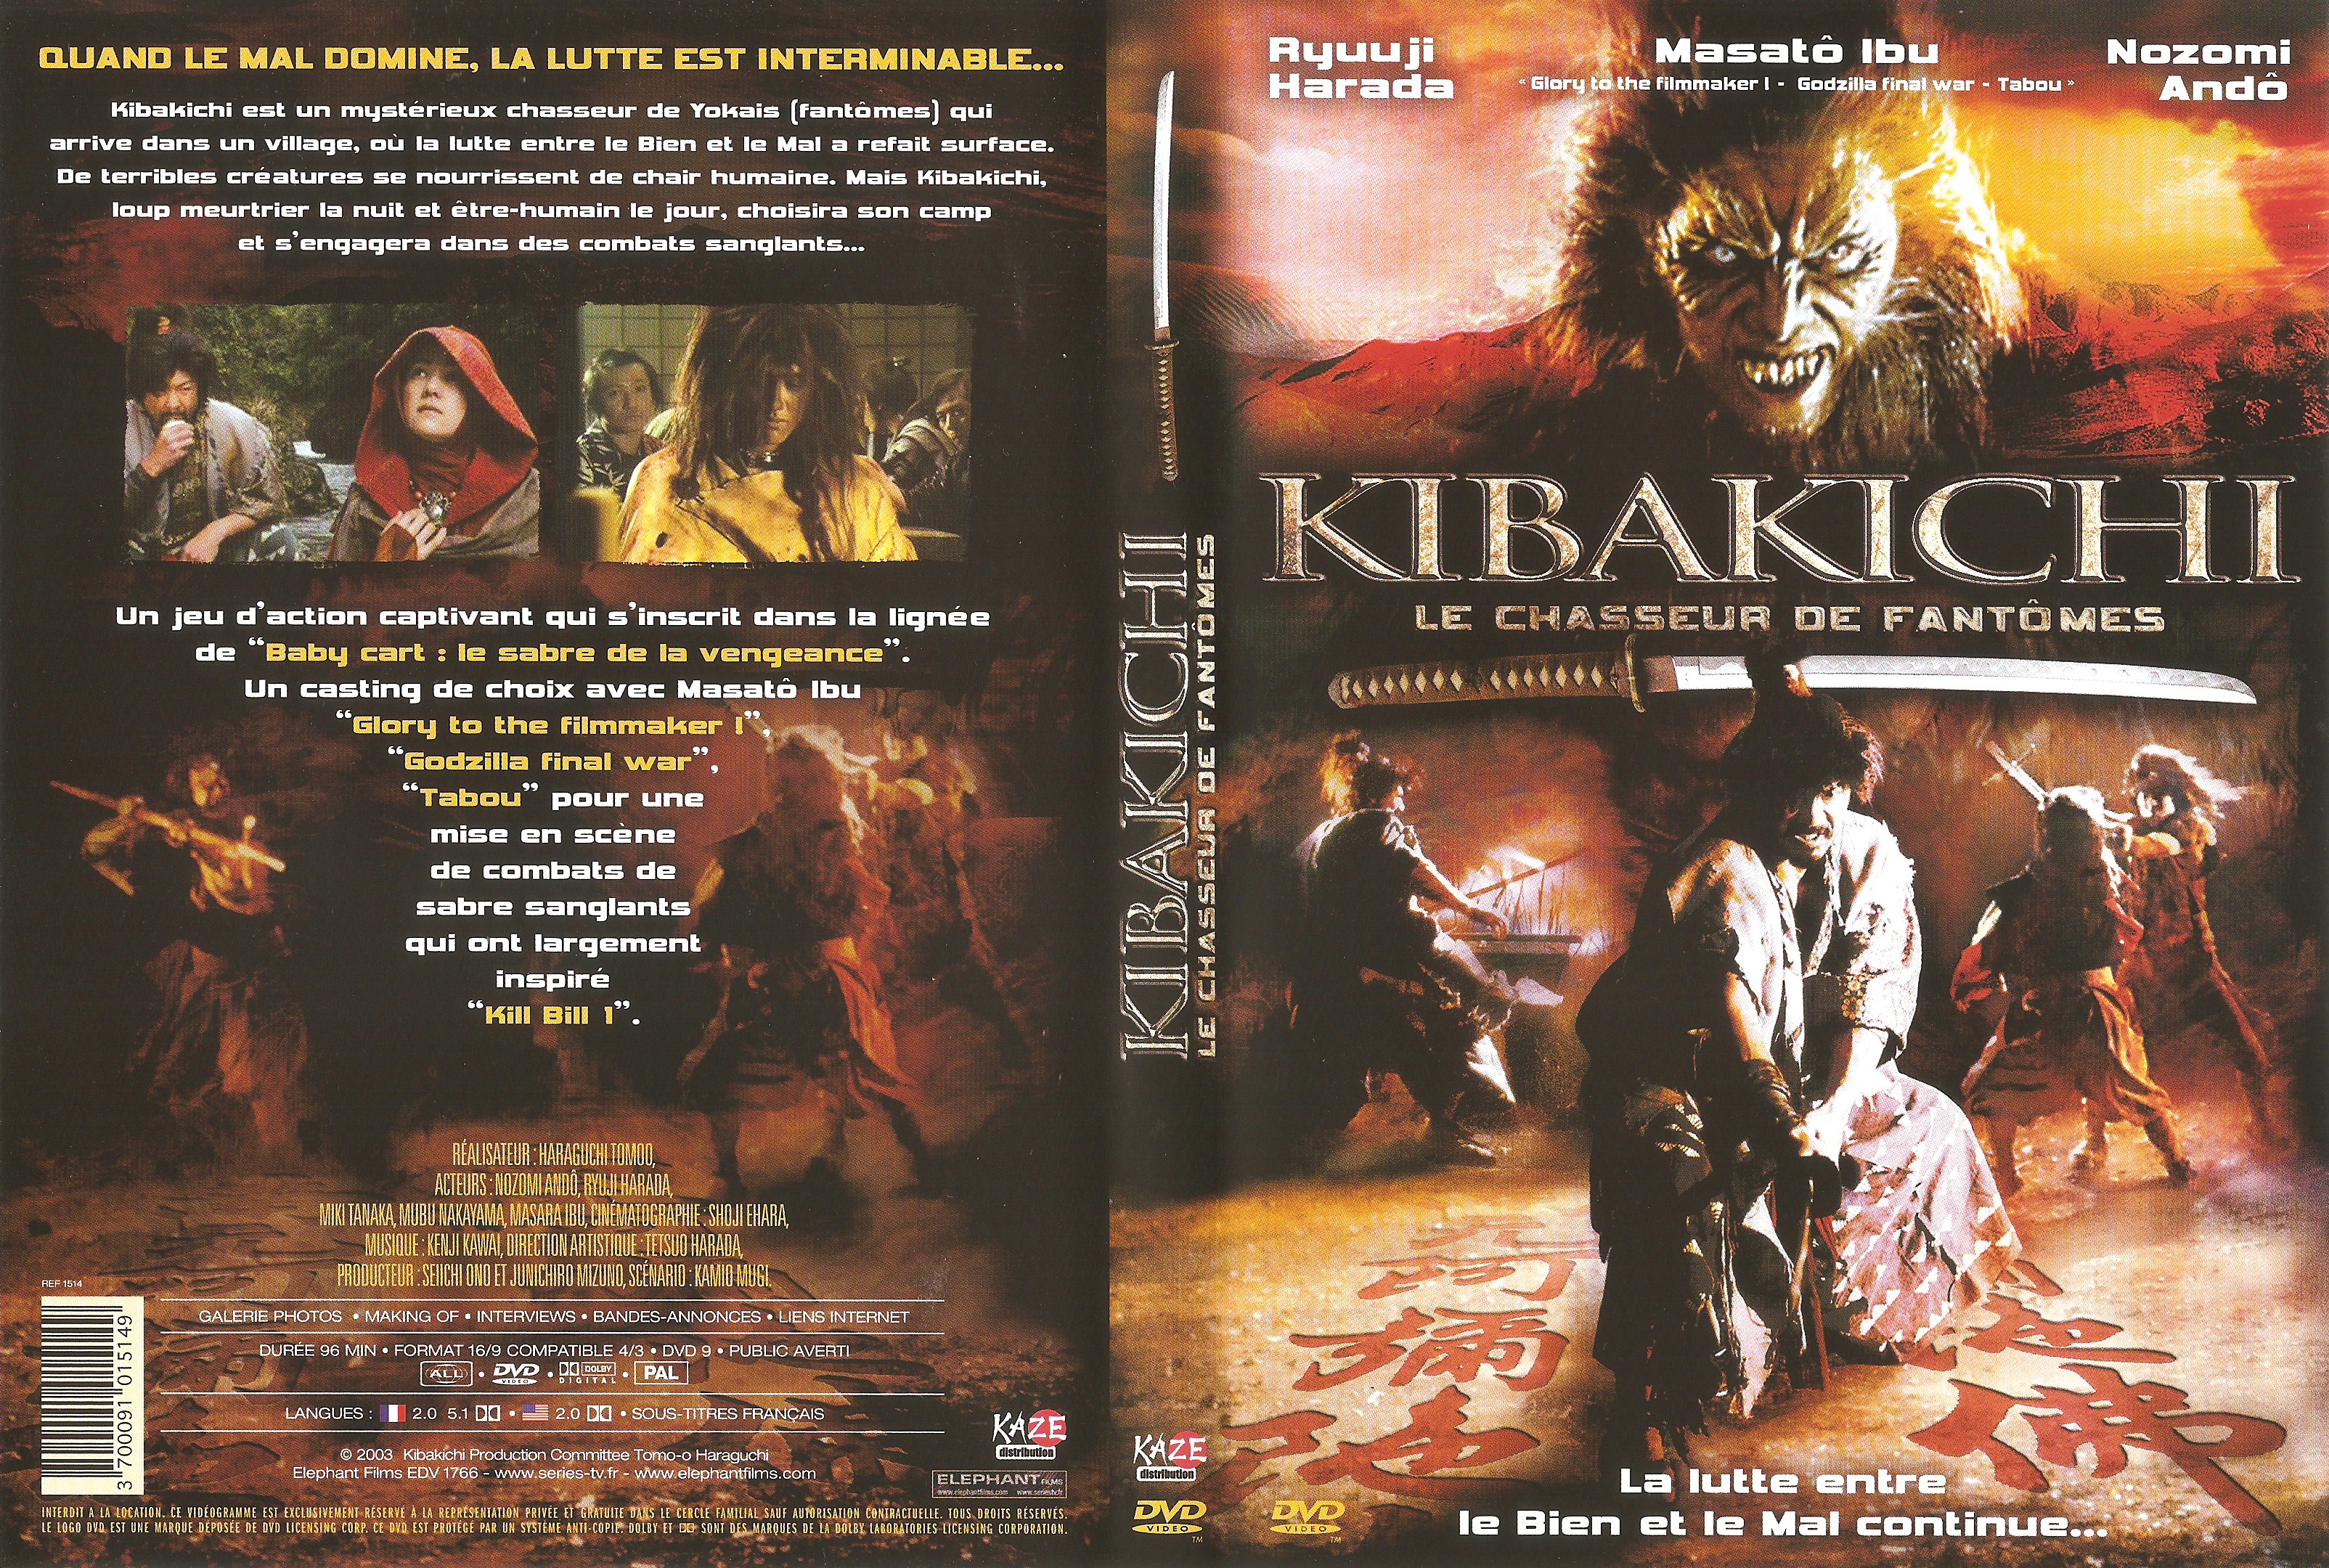 Jaquette DVD Kibakichi Le chasseur de fantomes